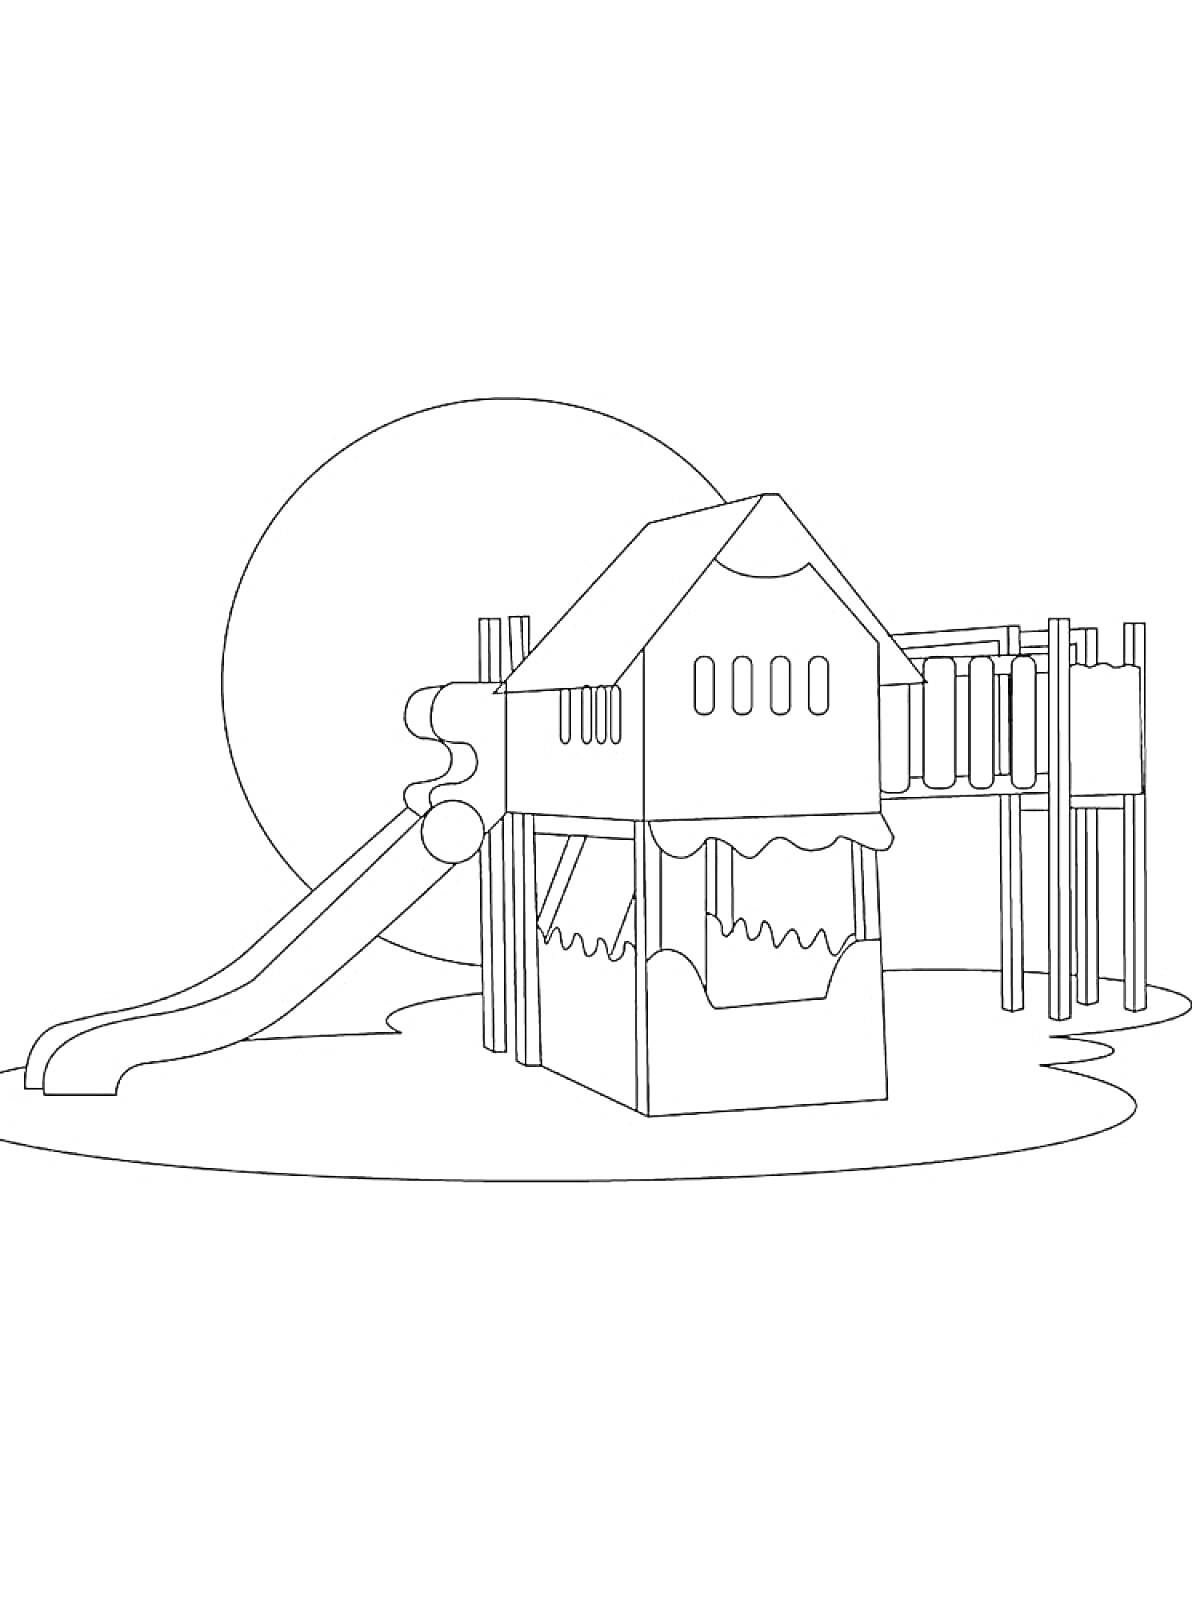 Раскраска Игровая площадка с горкой, игровой домик, лестница и мостик